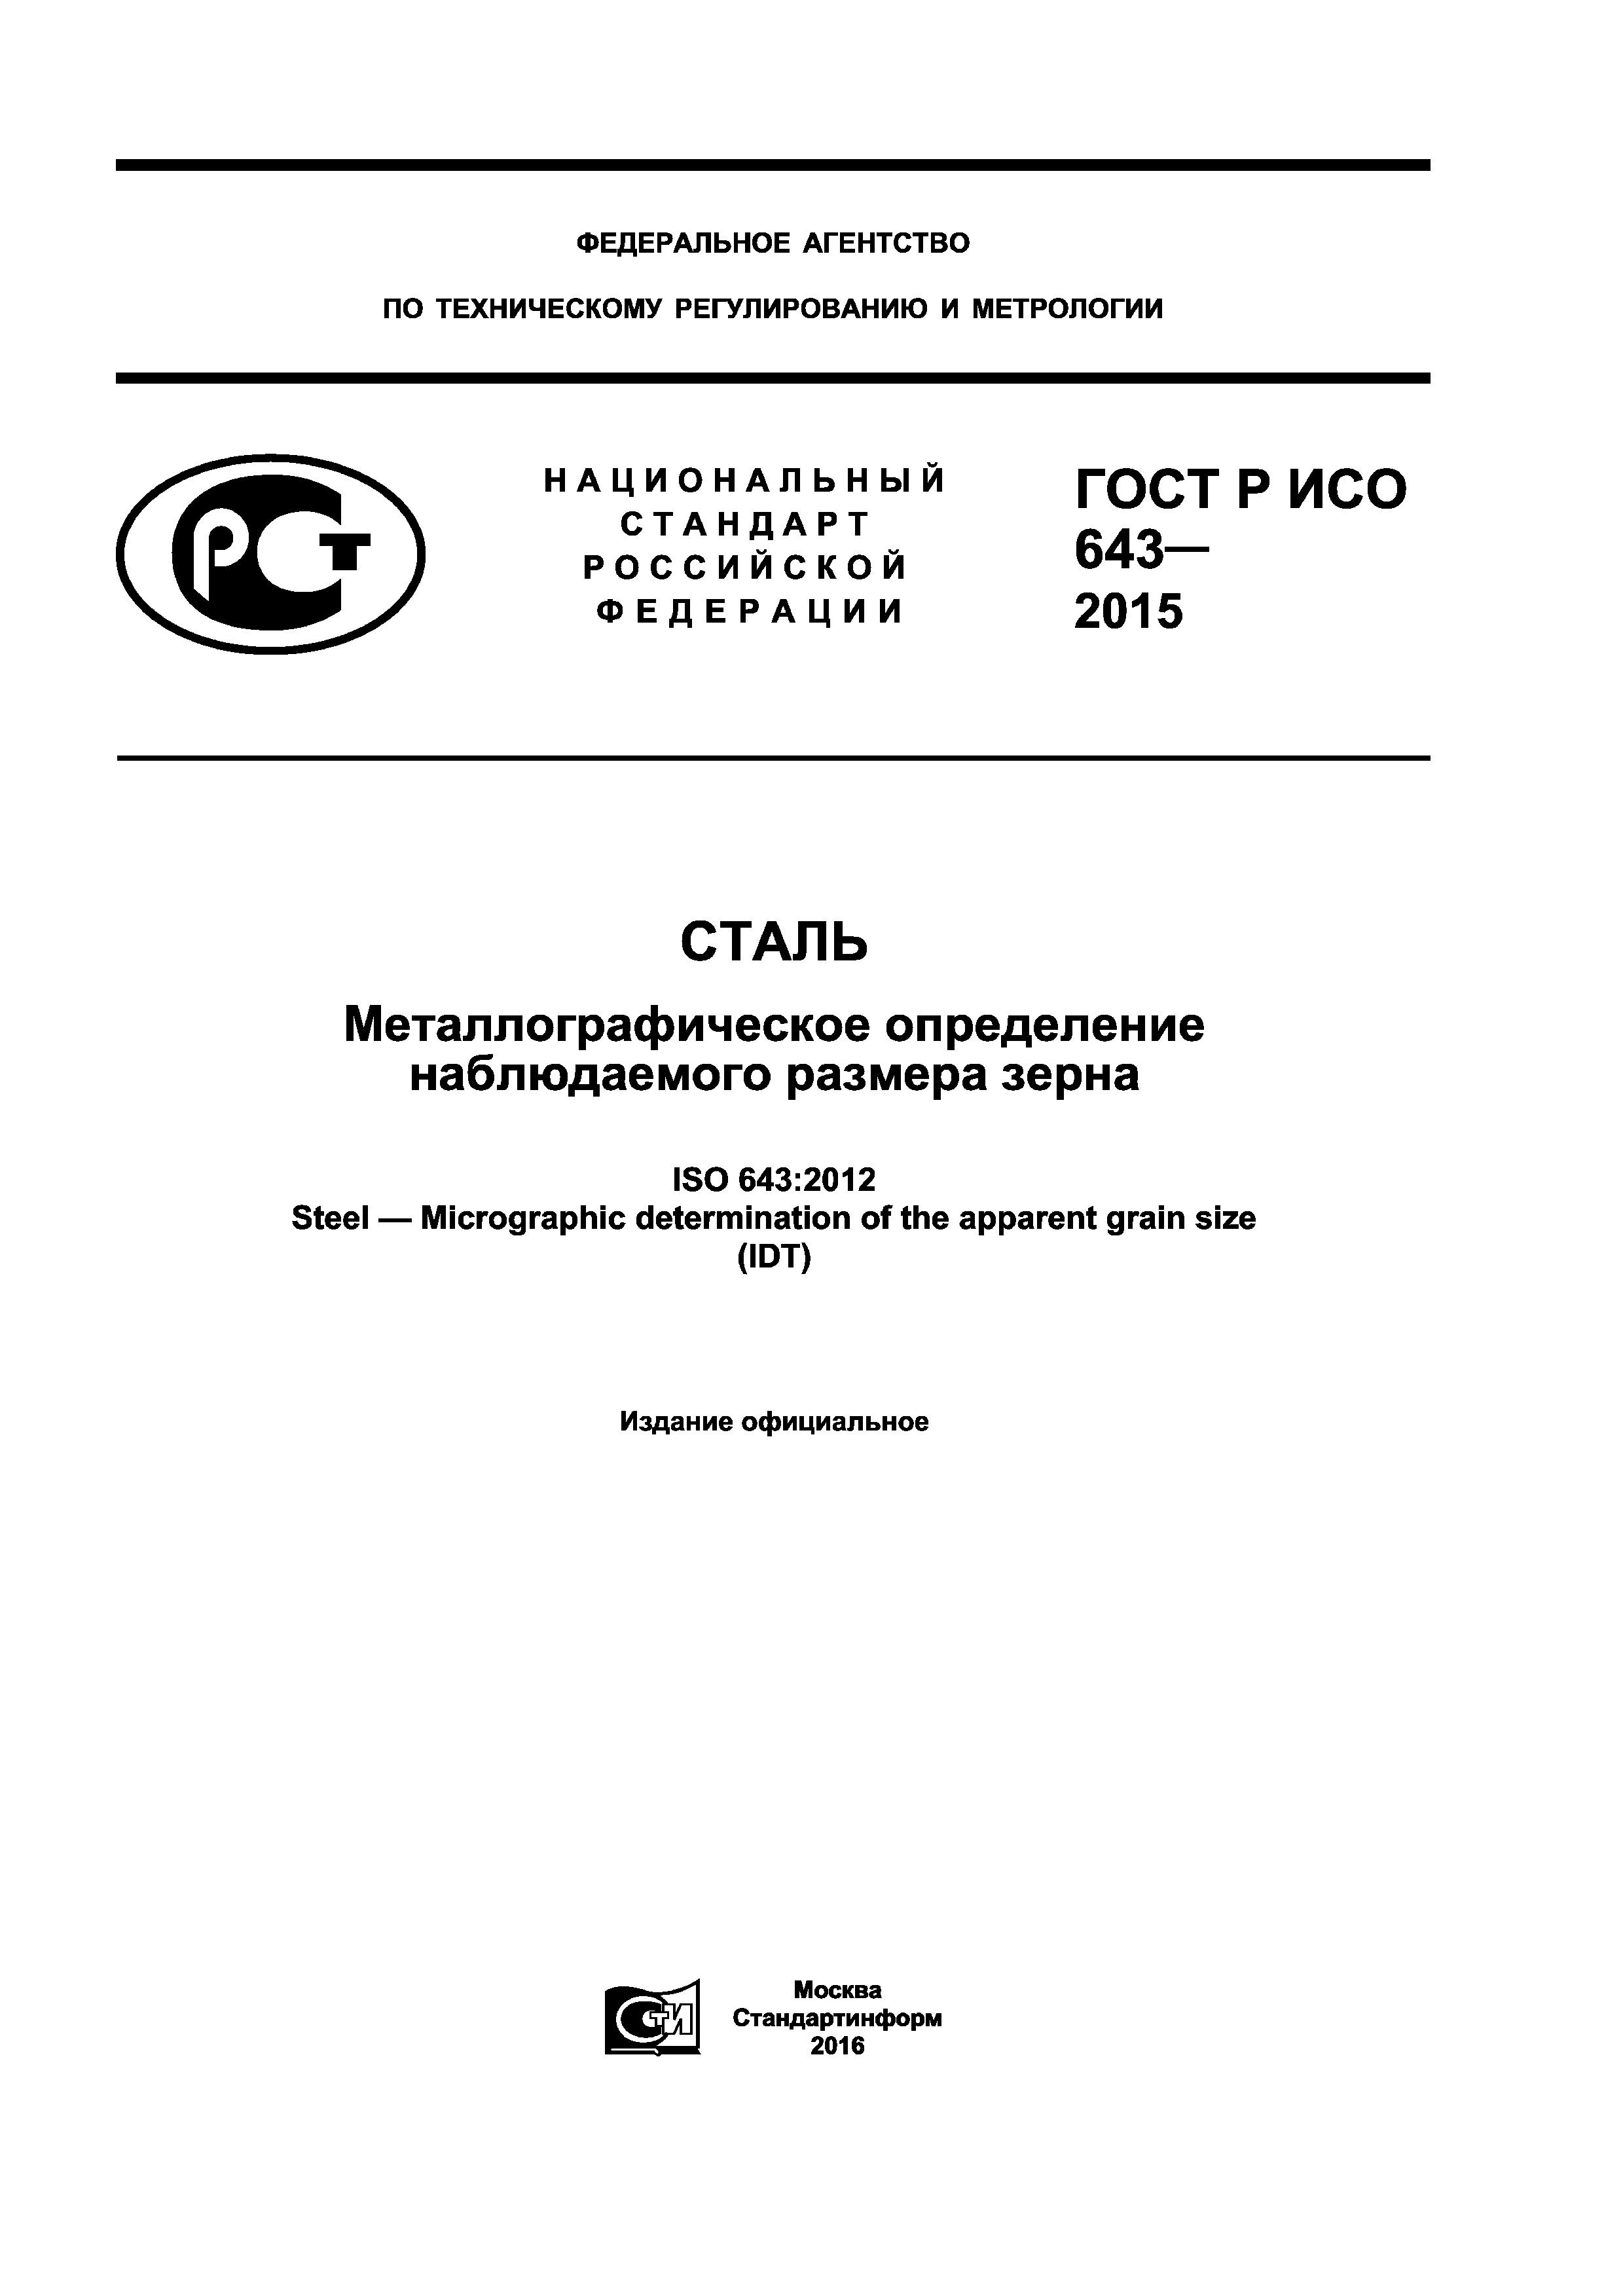 ГОСТ Р ИСО 643-2015